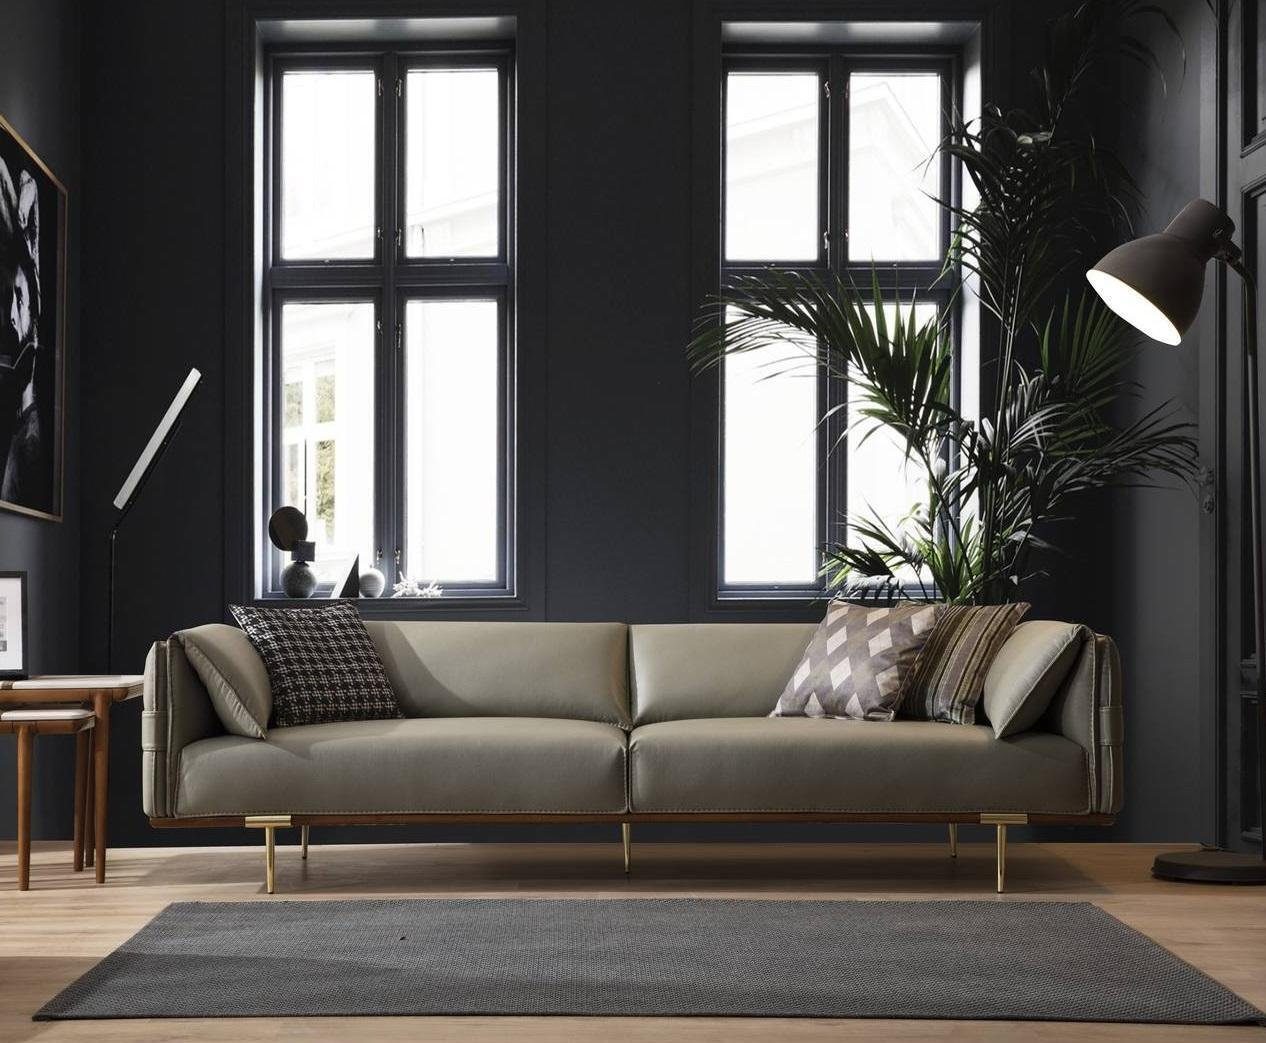 JVmoebel 3-Sitzer Grüner 3-Sitzer Wohnzimmer Ledersofas Designer Exklusive  Couch Sofas, 1 Teile, Made in Europa